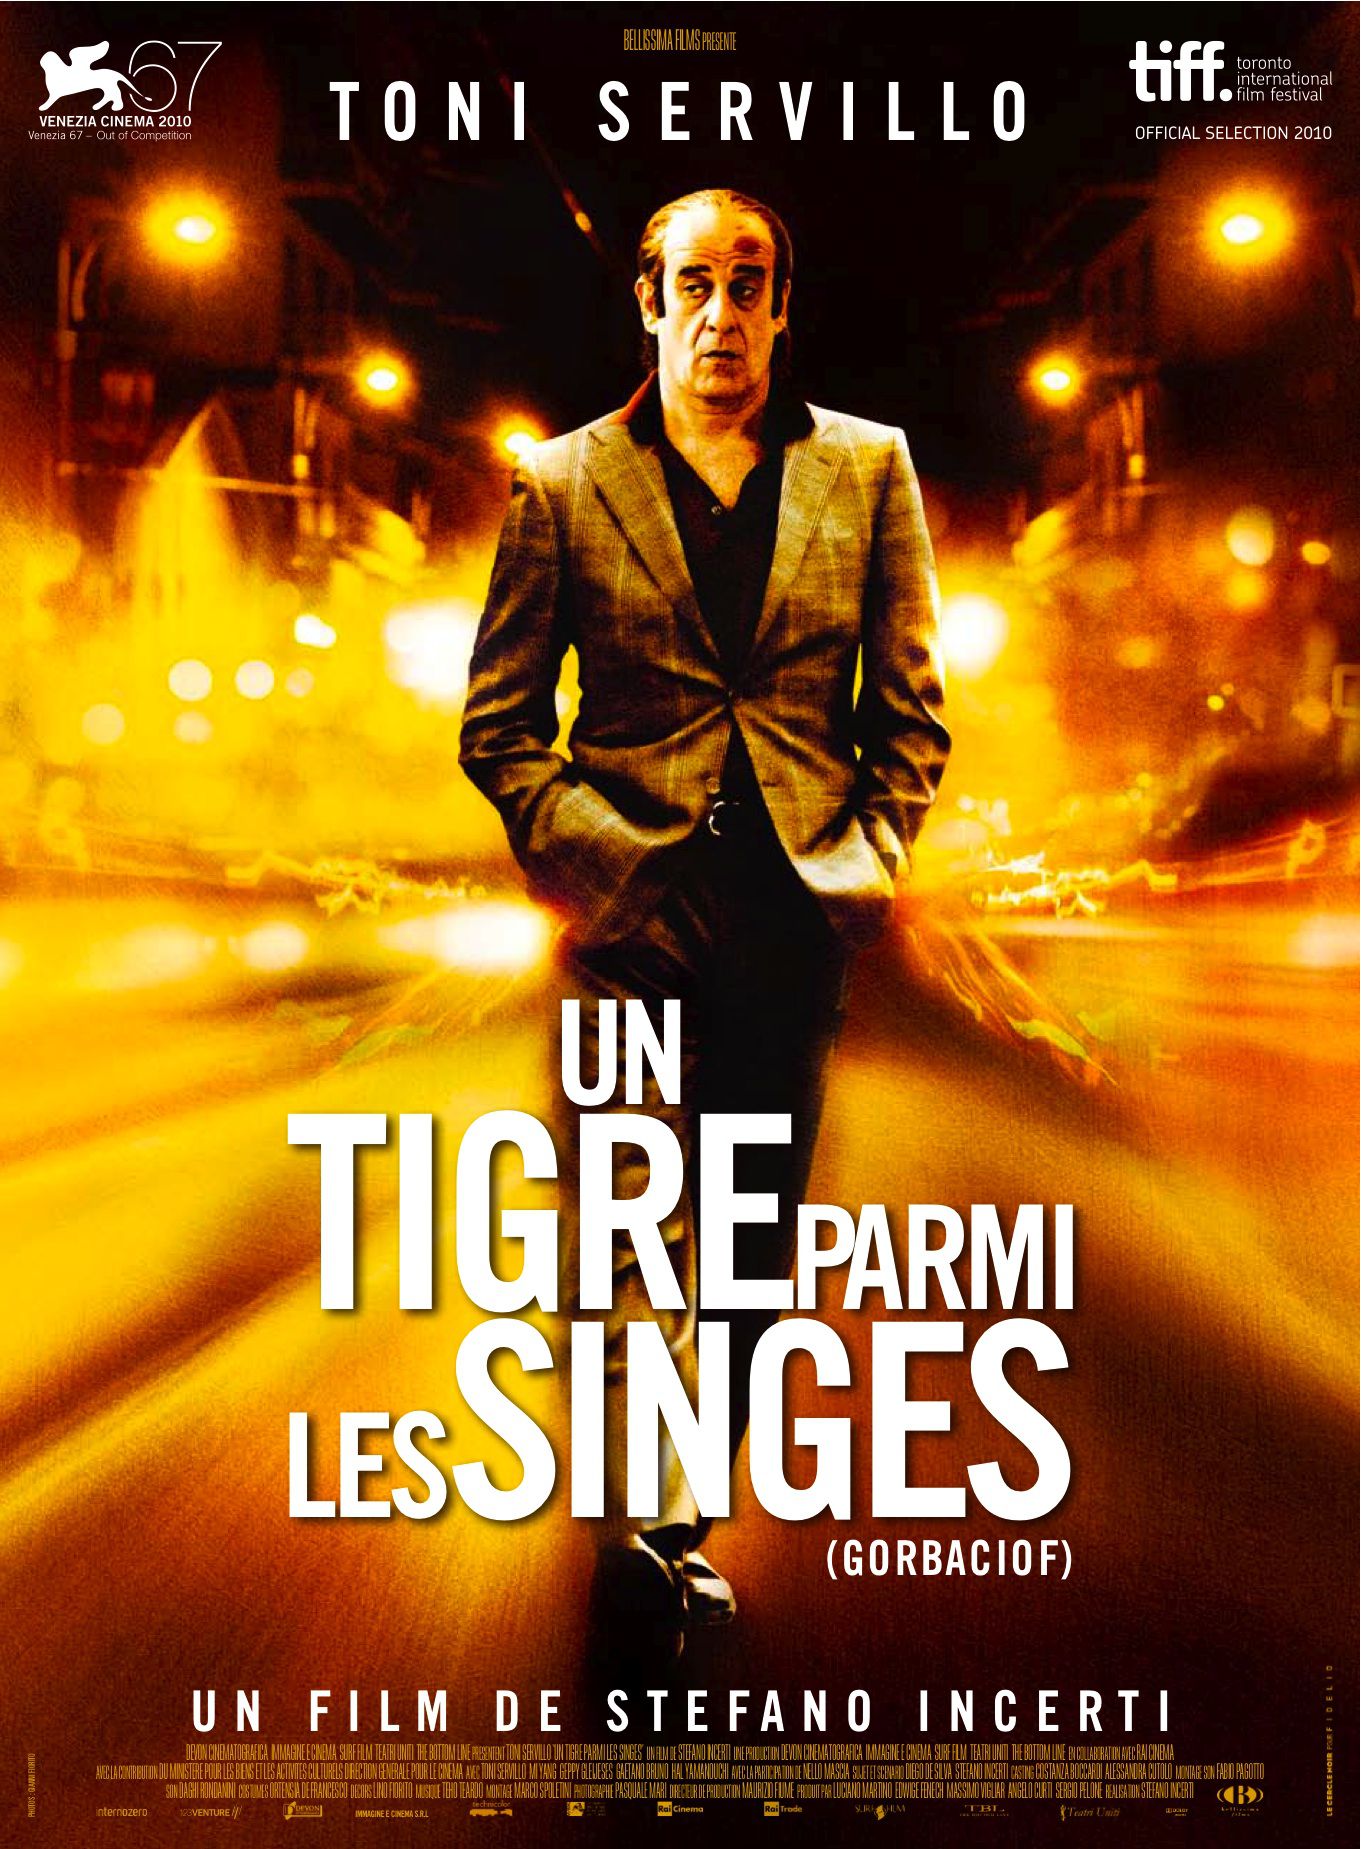 Un tigre parmi les singes - Film (2011) streaming VF gratuit complet